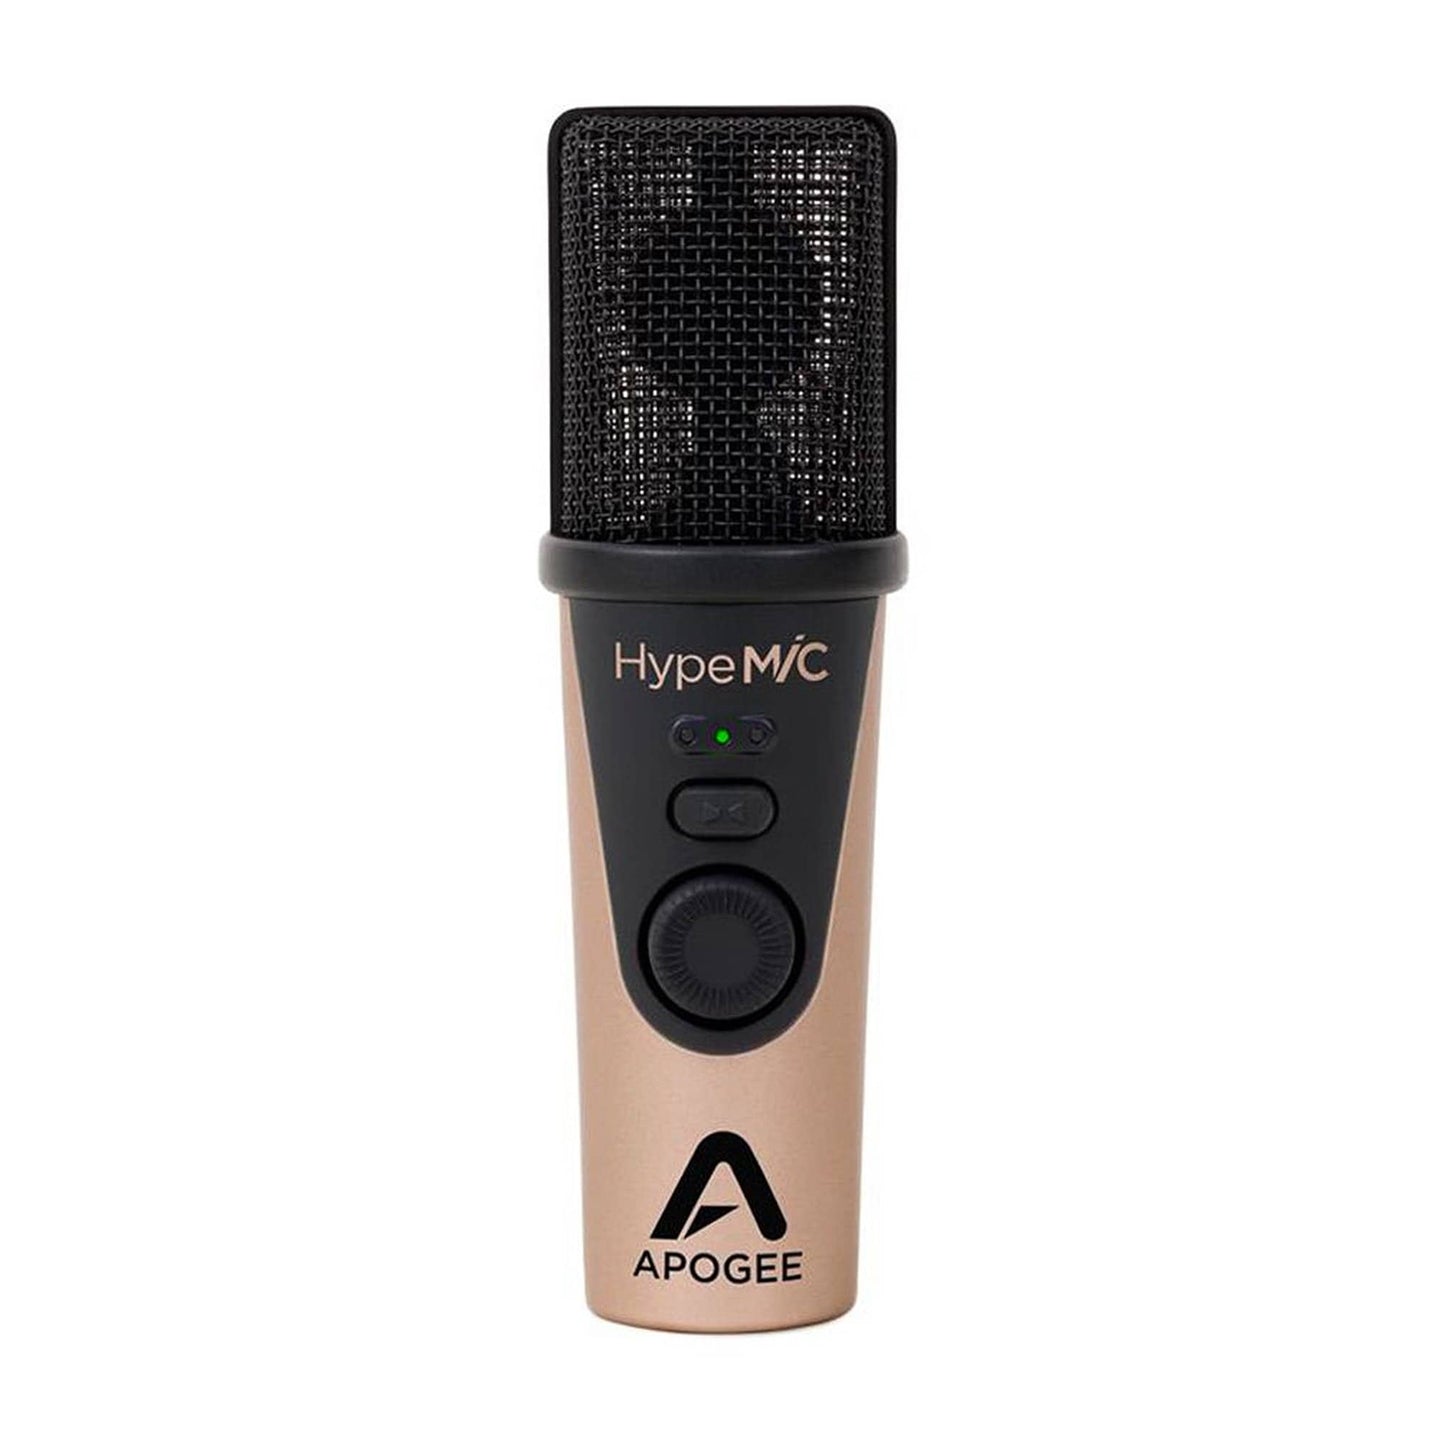 Apogee HypeMiC USB Microphone Pro Audio / Microphones